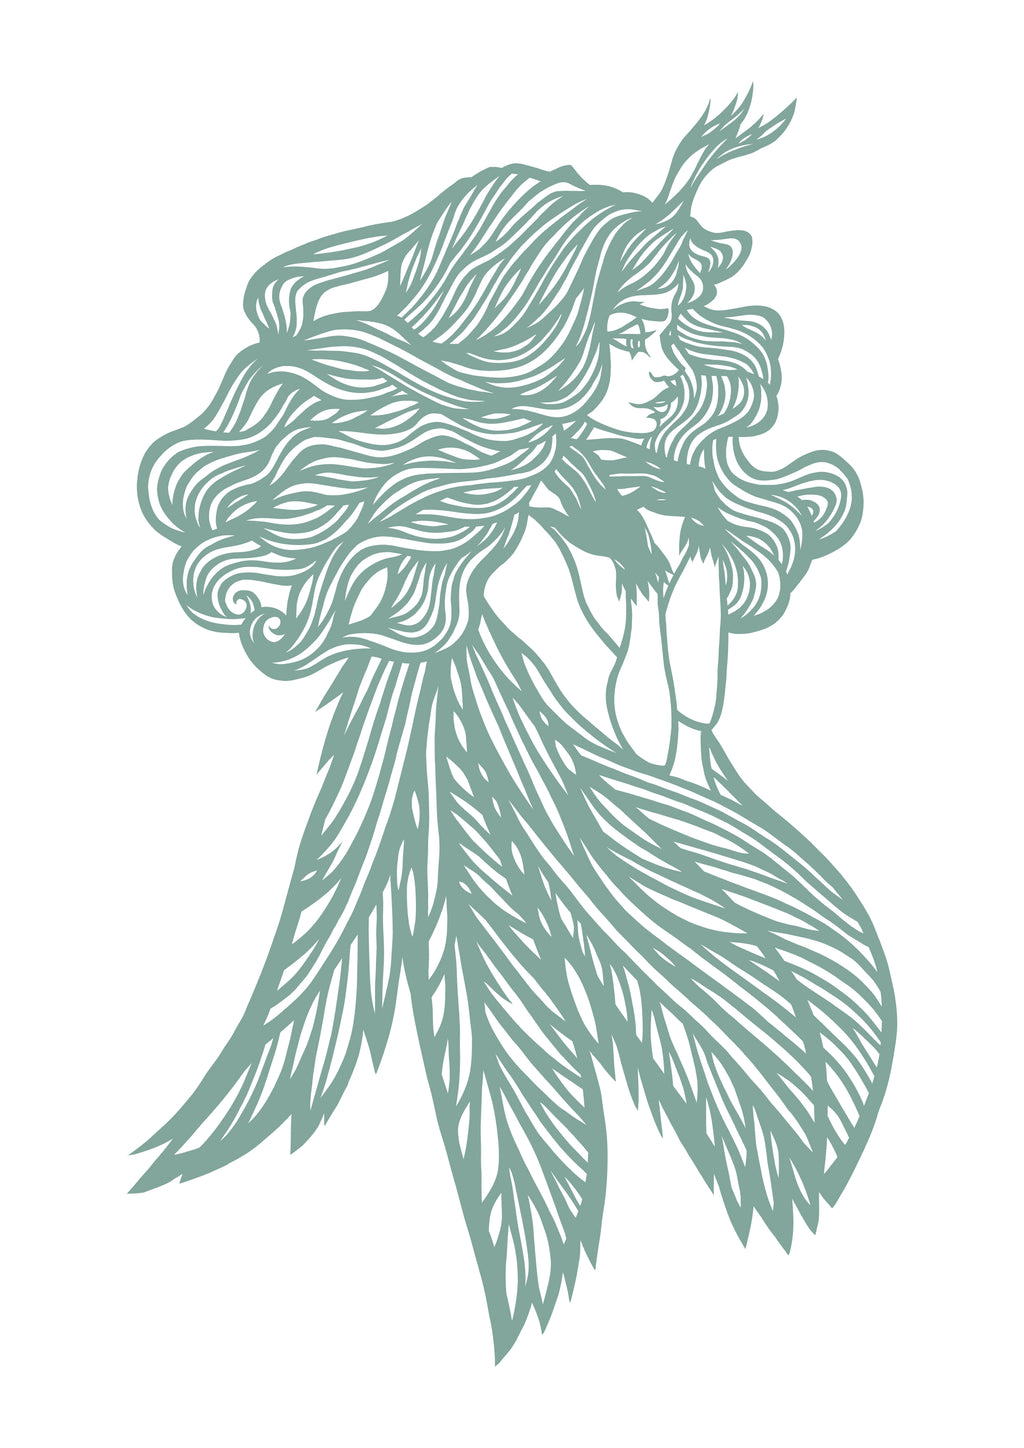 Elf girl with wings Original papercut A5 by MarinaPapercuts